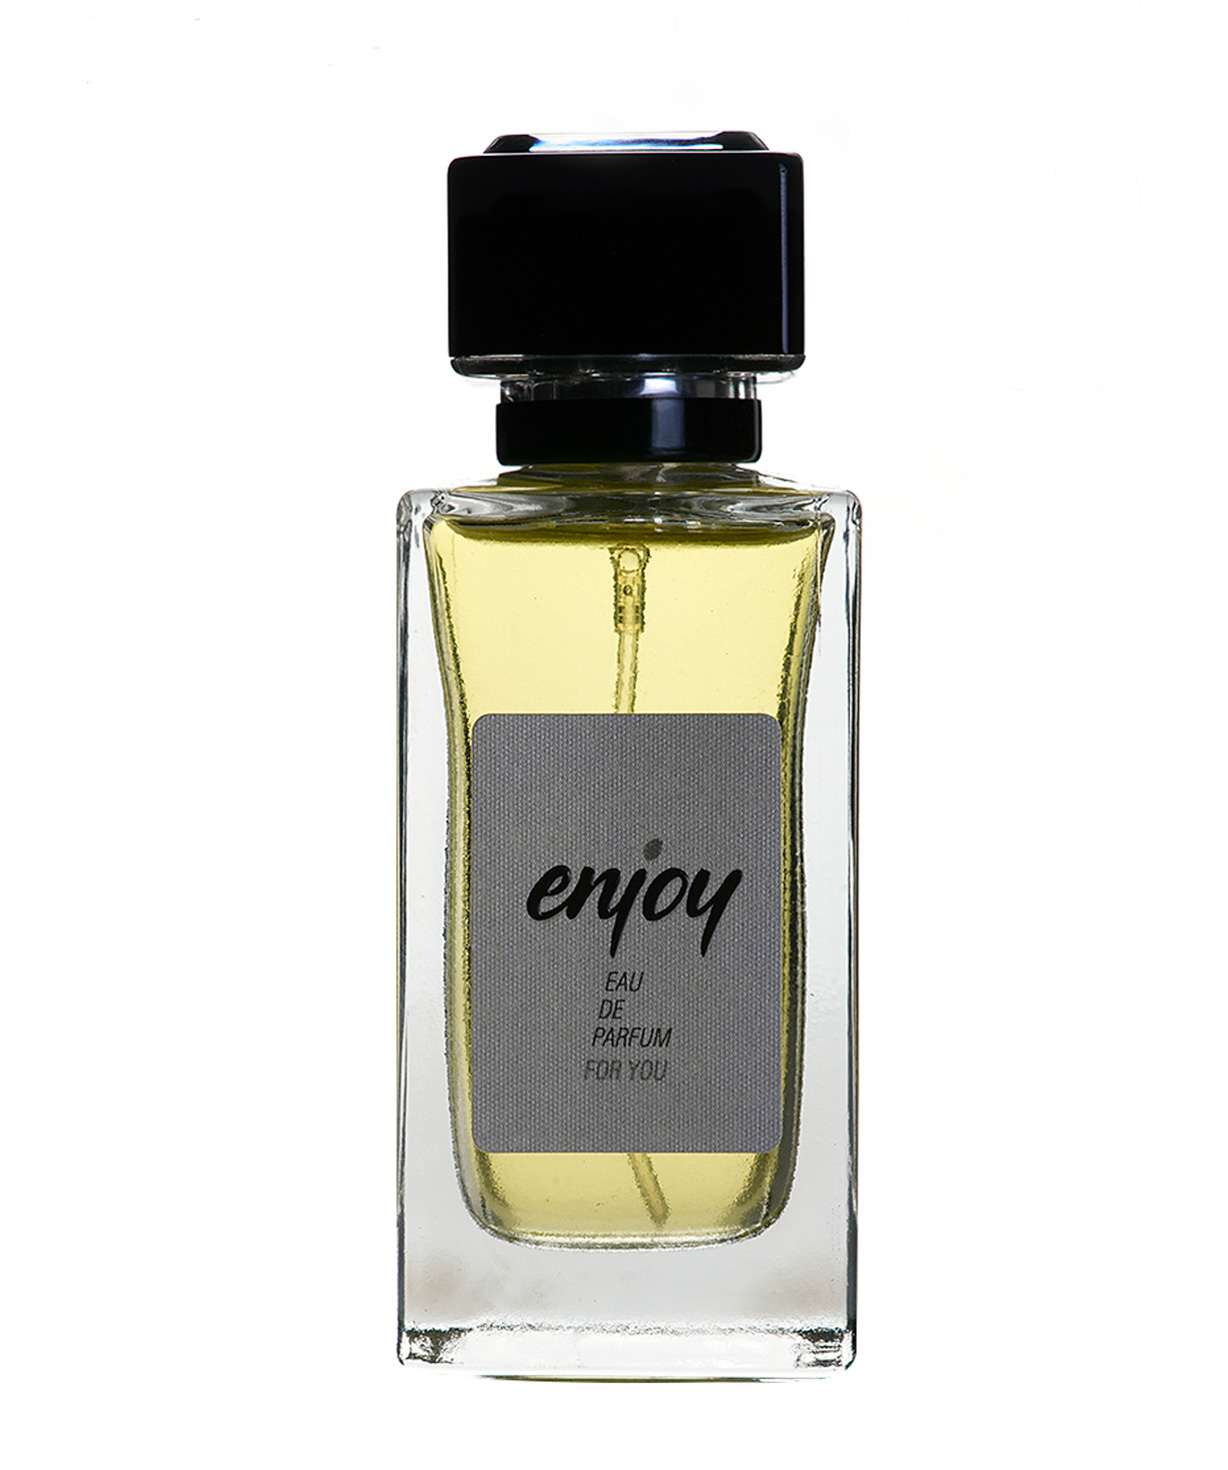 Օծանելիք «Enjoy Eau de parfum»